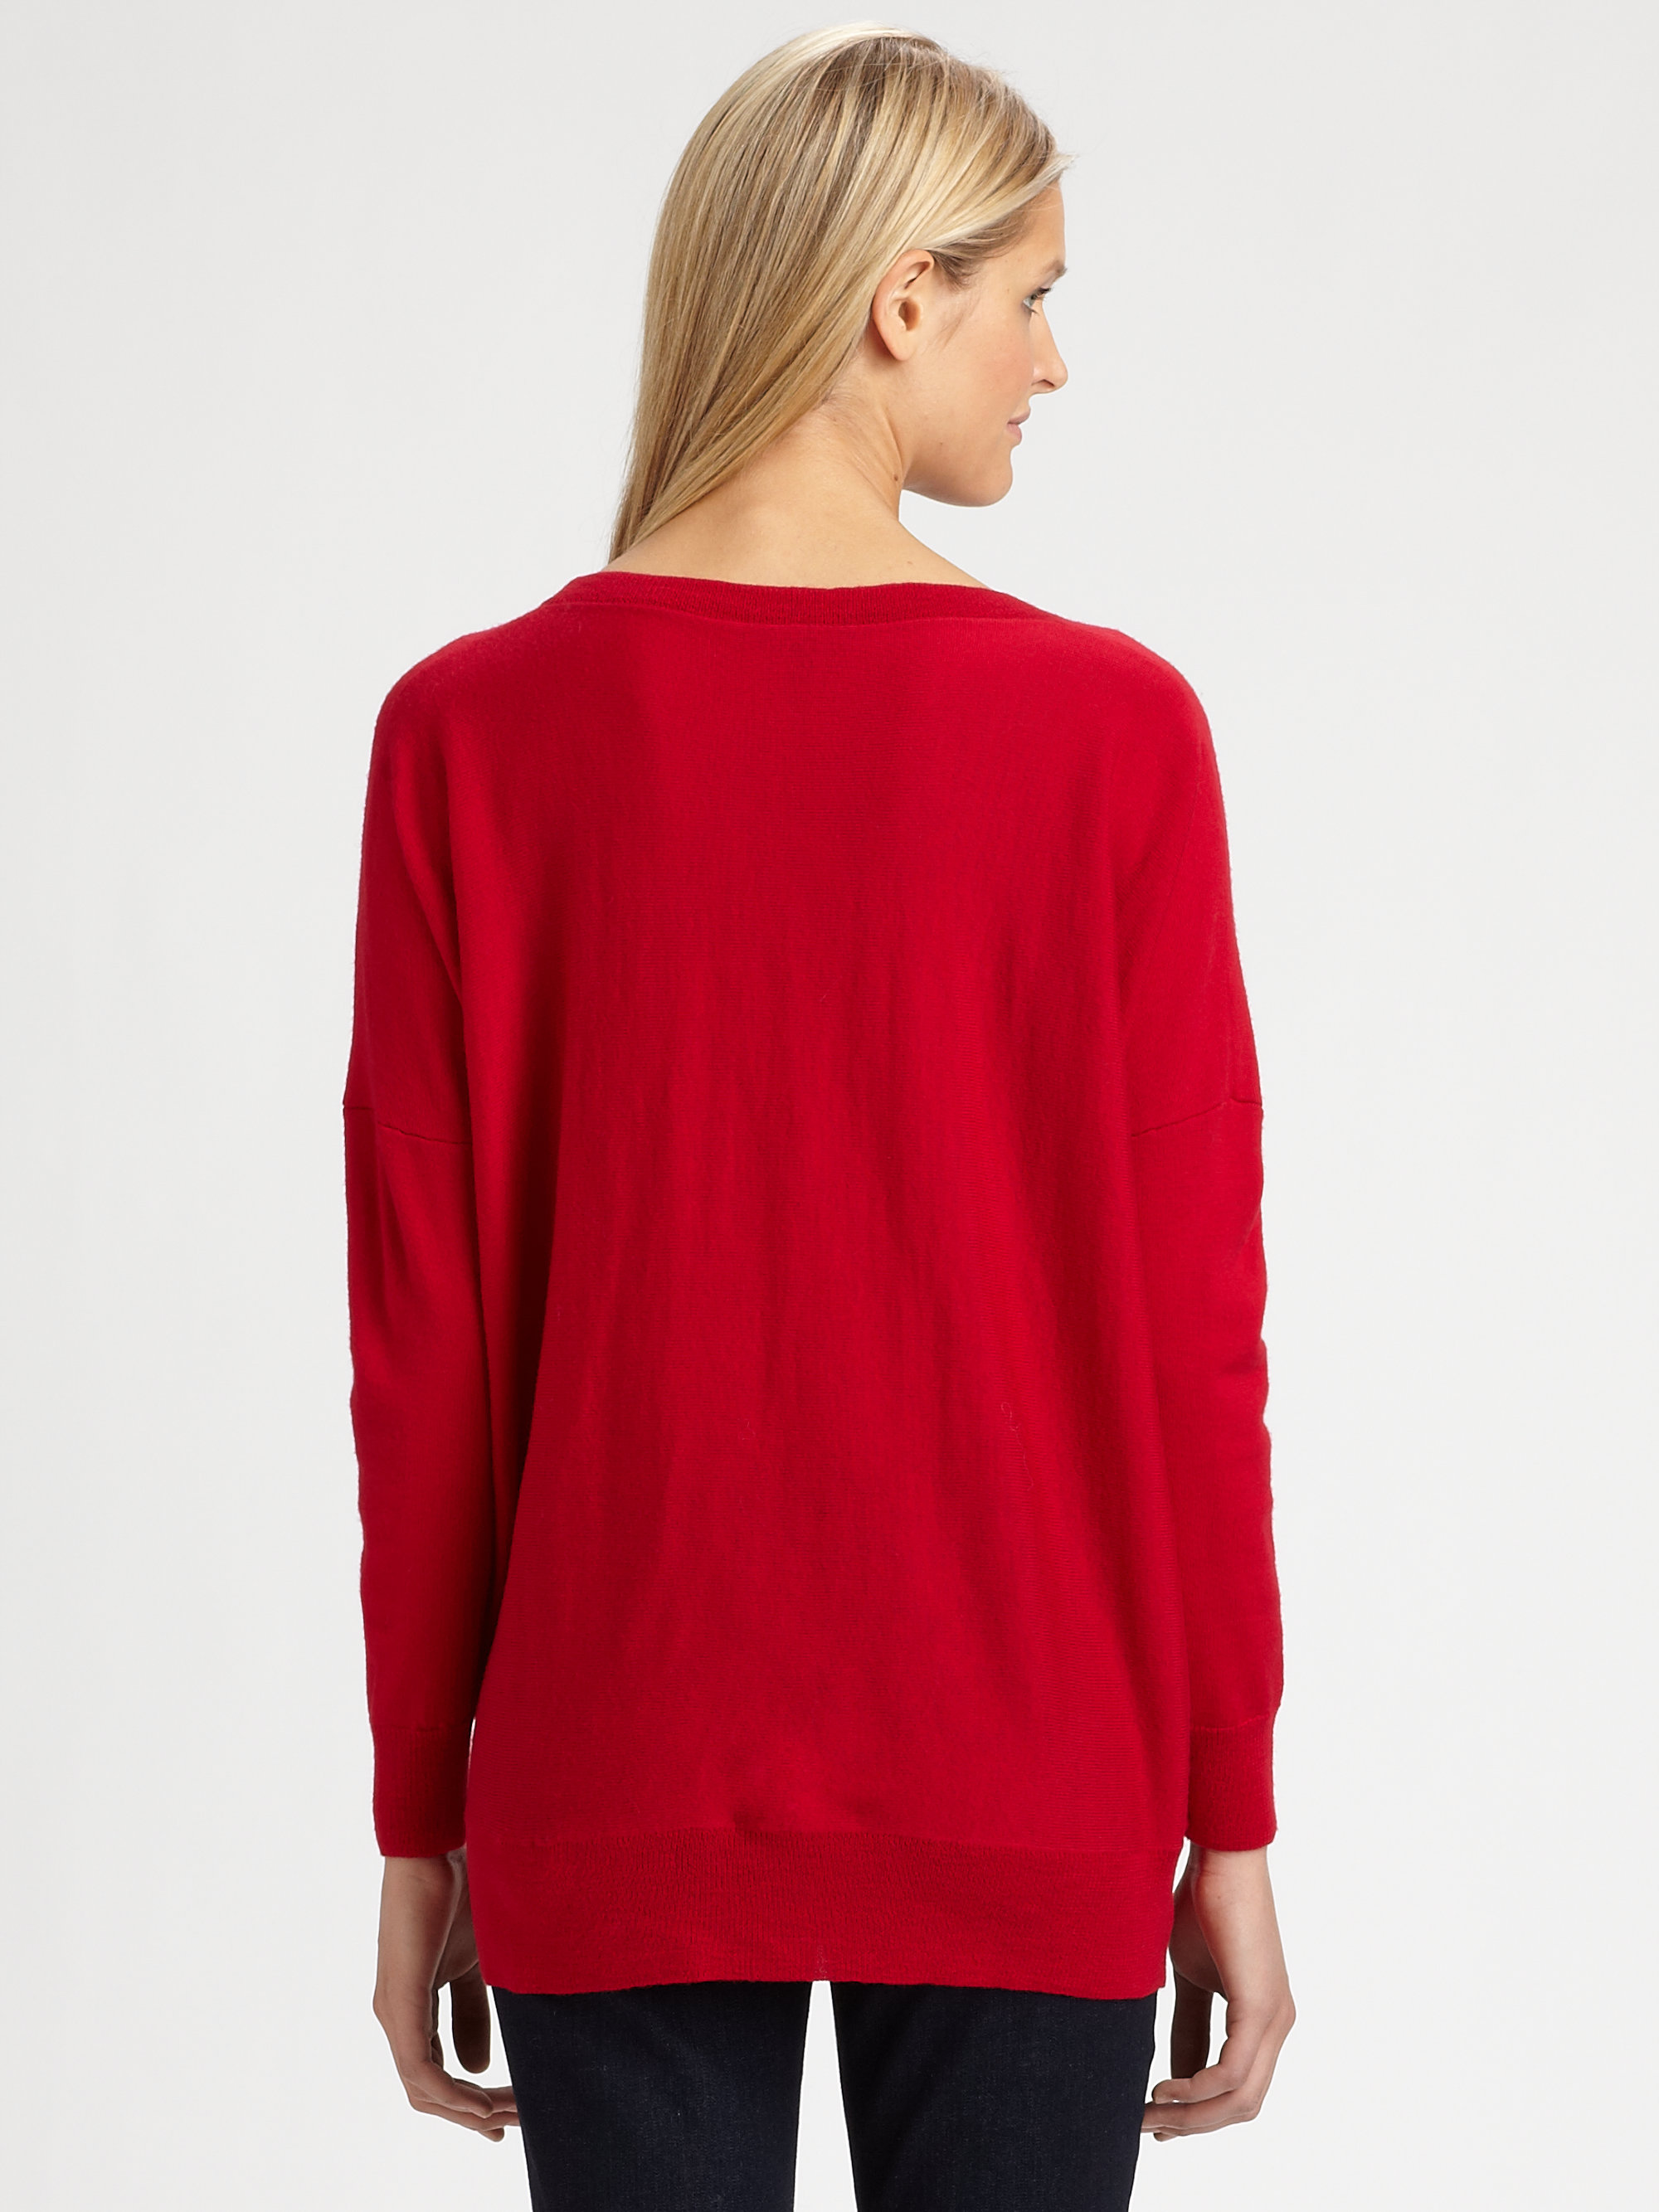 Lyst - Eileen Fisher Merino Wool Sweater in Red